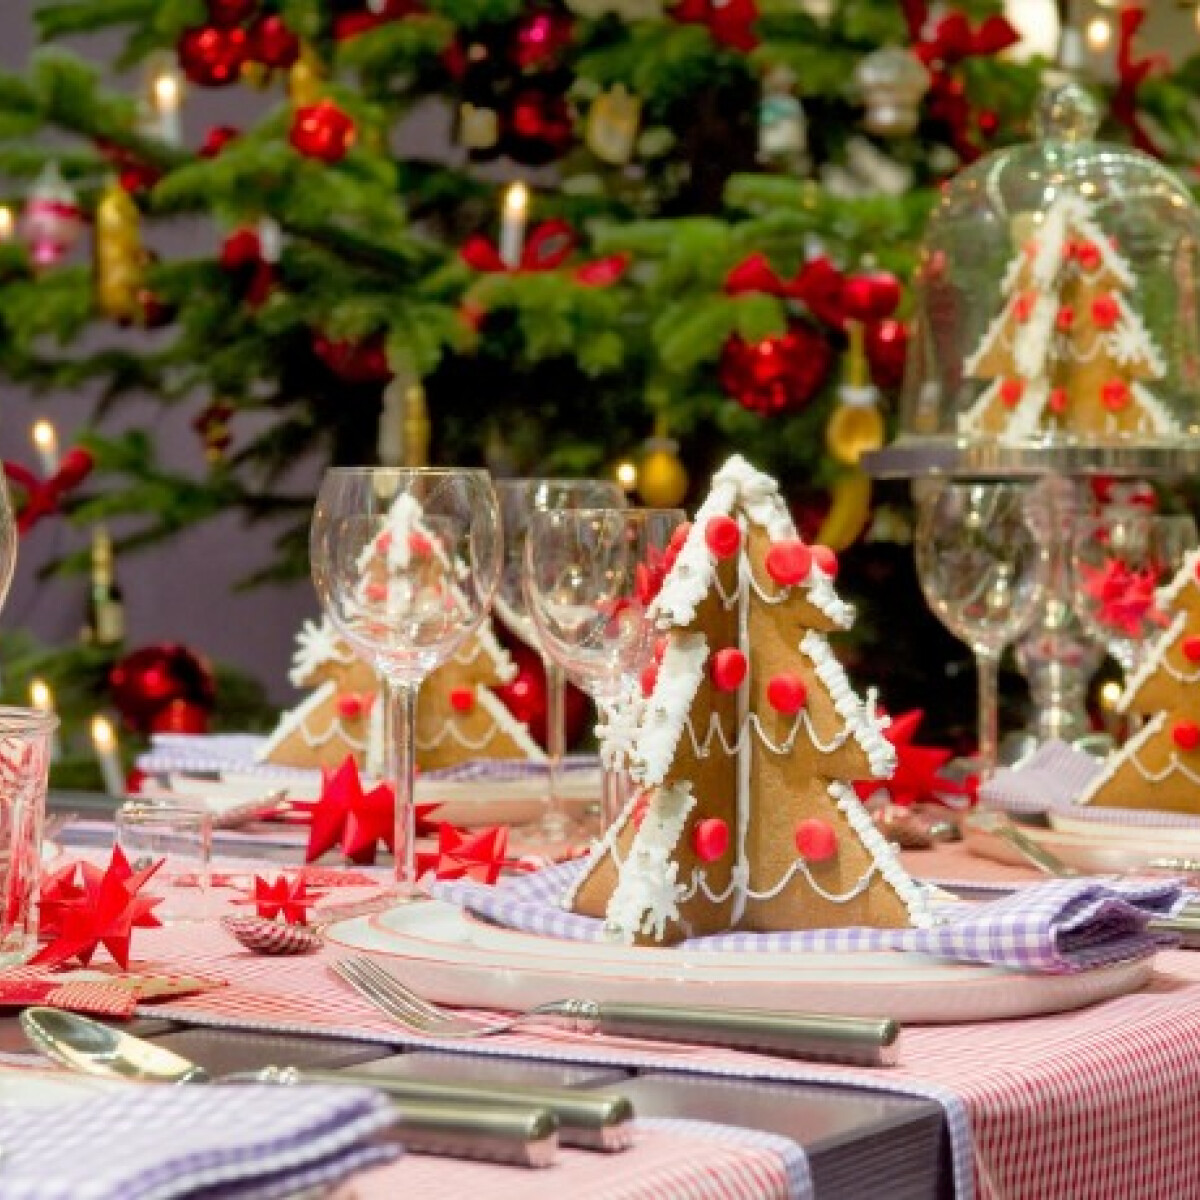 Az 5 legszebb karácsonyi asztaldekoráció - Neked melyik a kedvenced?